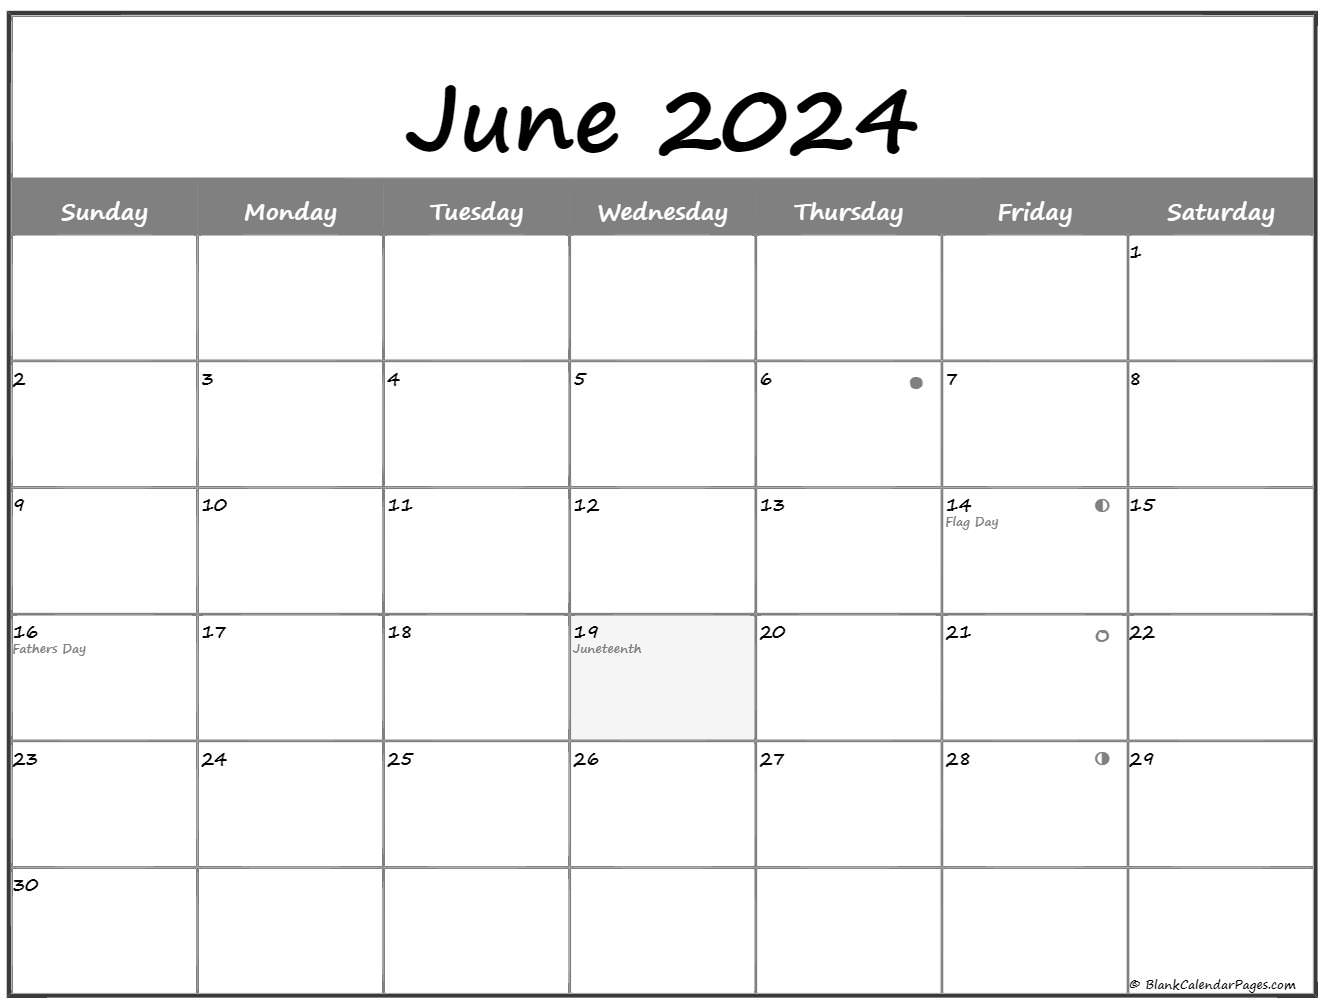 Lunar Calendar June 2022 June 2022 Lunar Calendar | Moon Phase Calendar